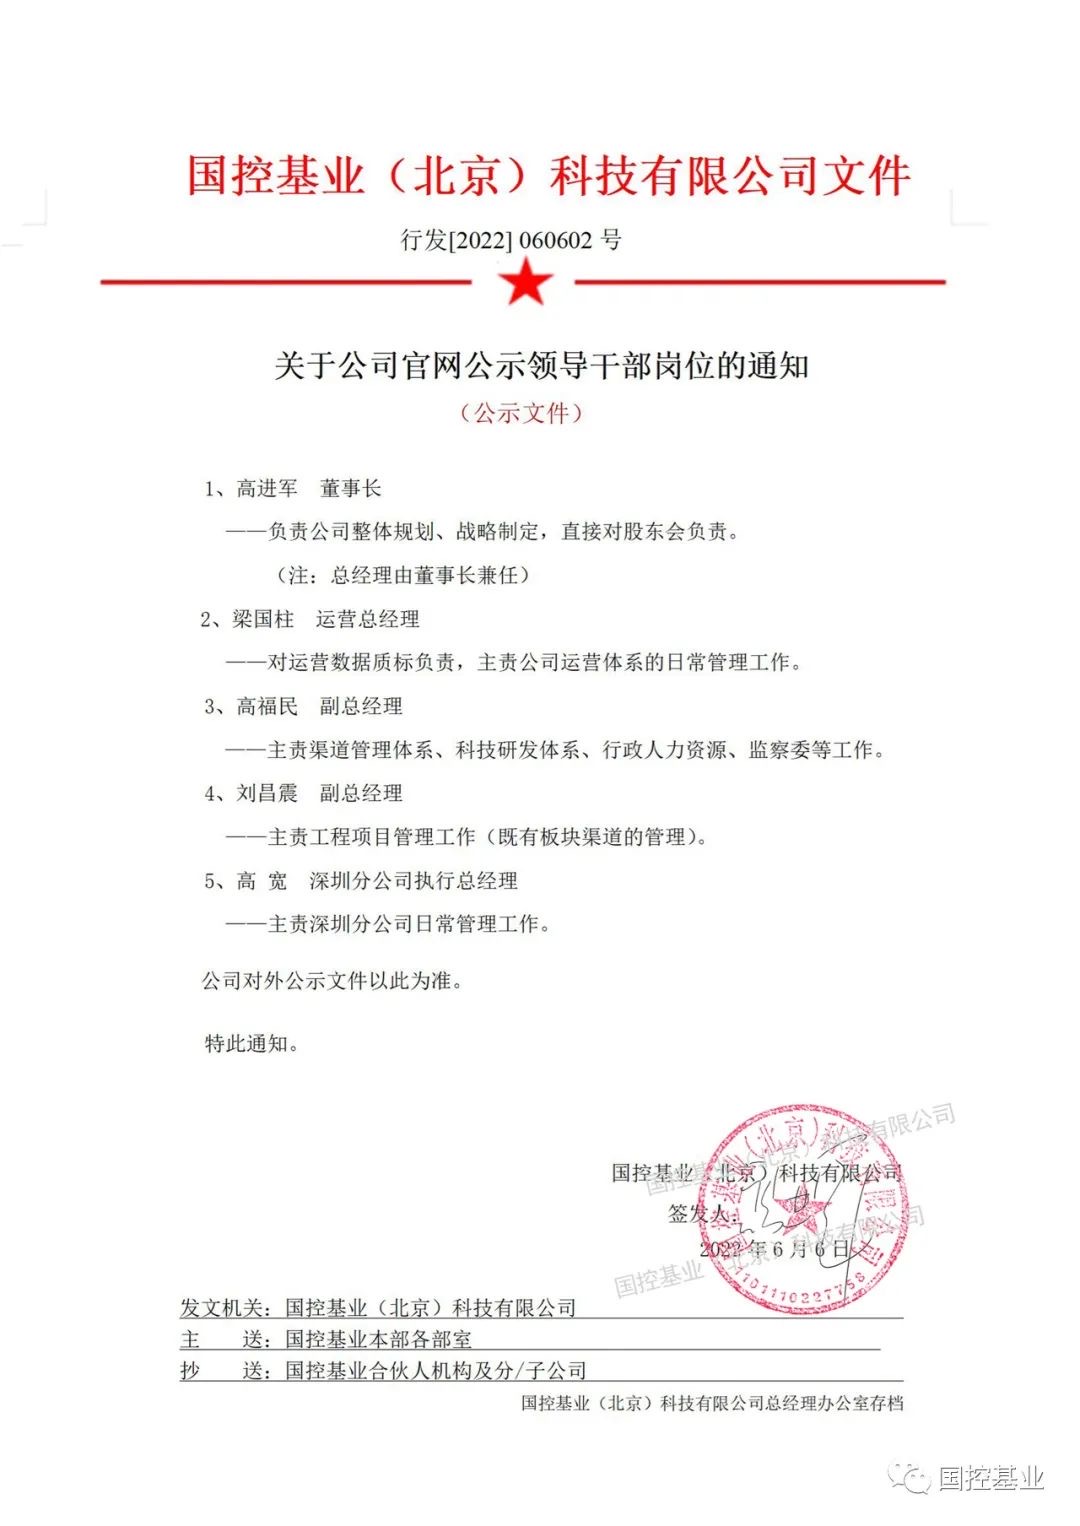 国控基业（北京）科技有限公司领导干部岗位公示